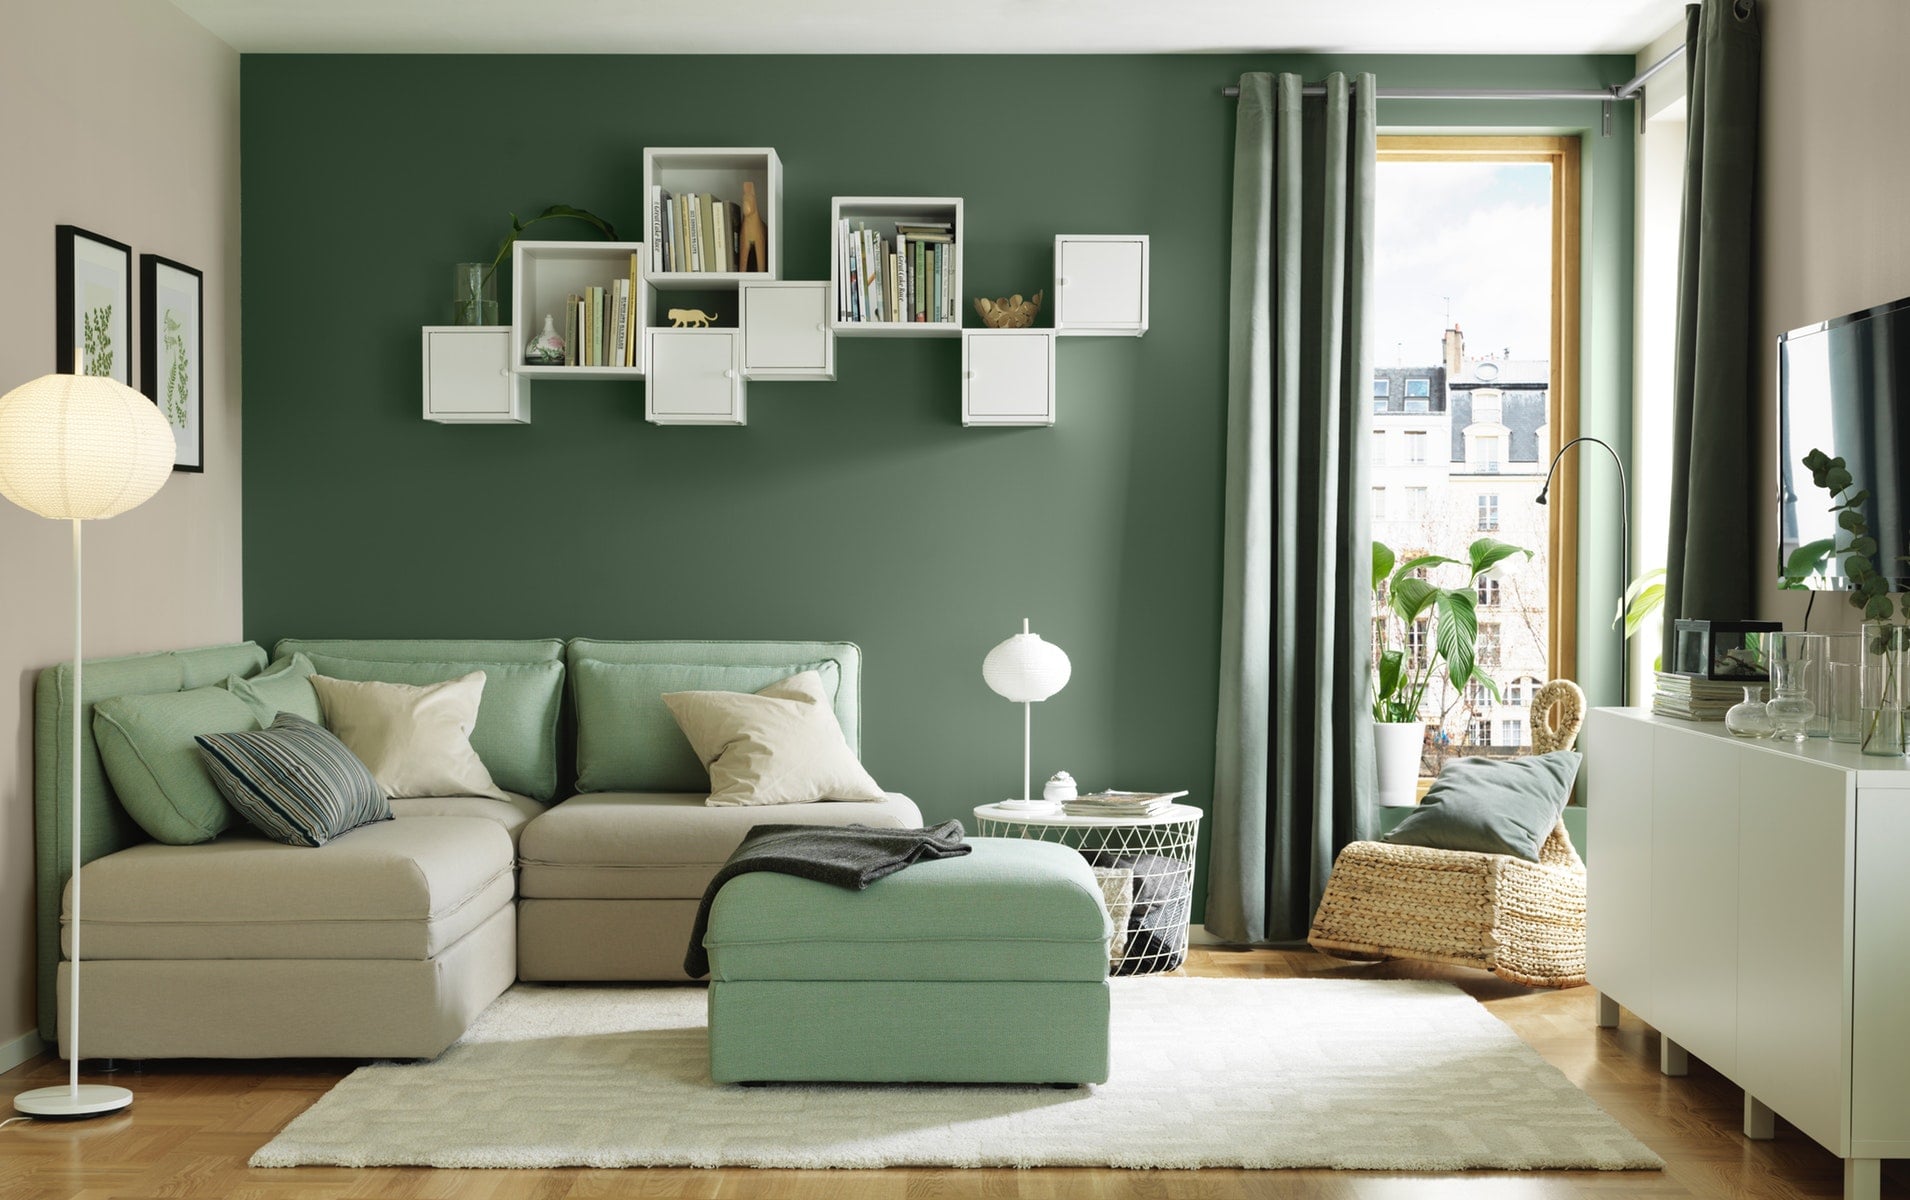 29 Ide Cantik Desain Ruang Tamu Ikea Yang Wajib Kamu Ketahui